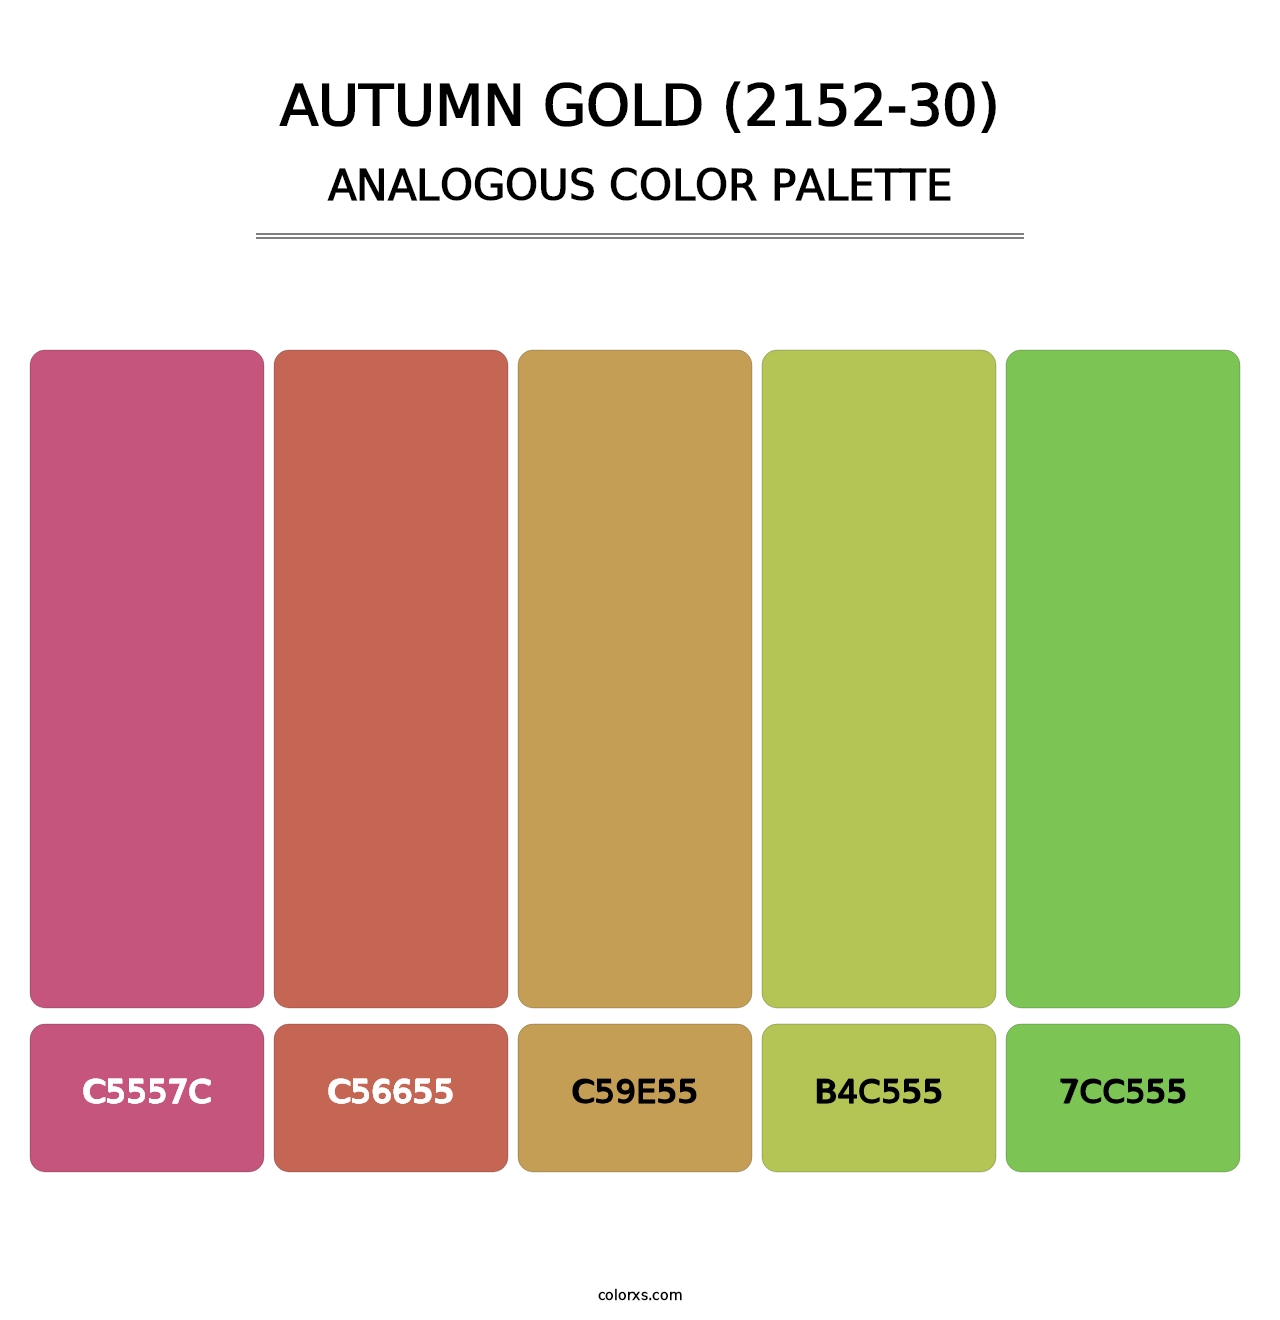 Autumn Gold (2152-30) - Analogous Color Palette